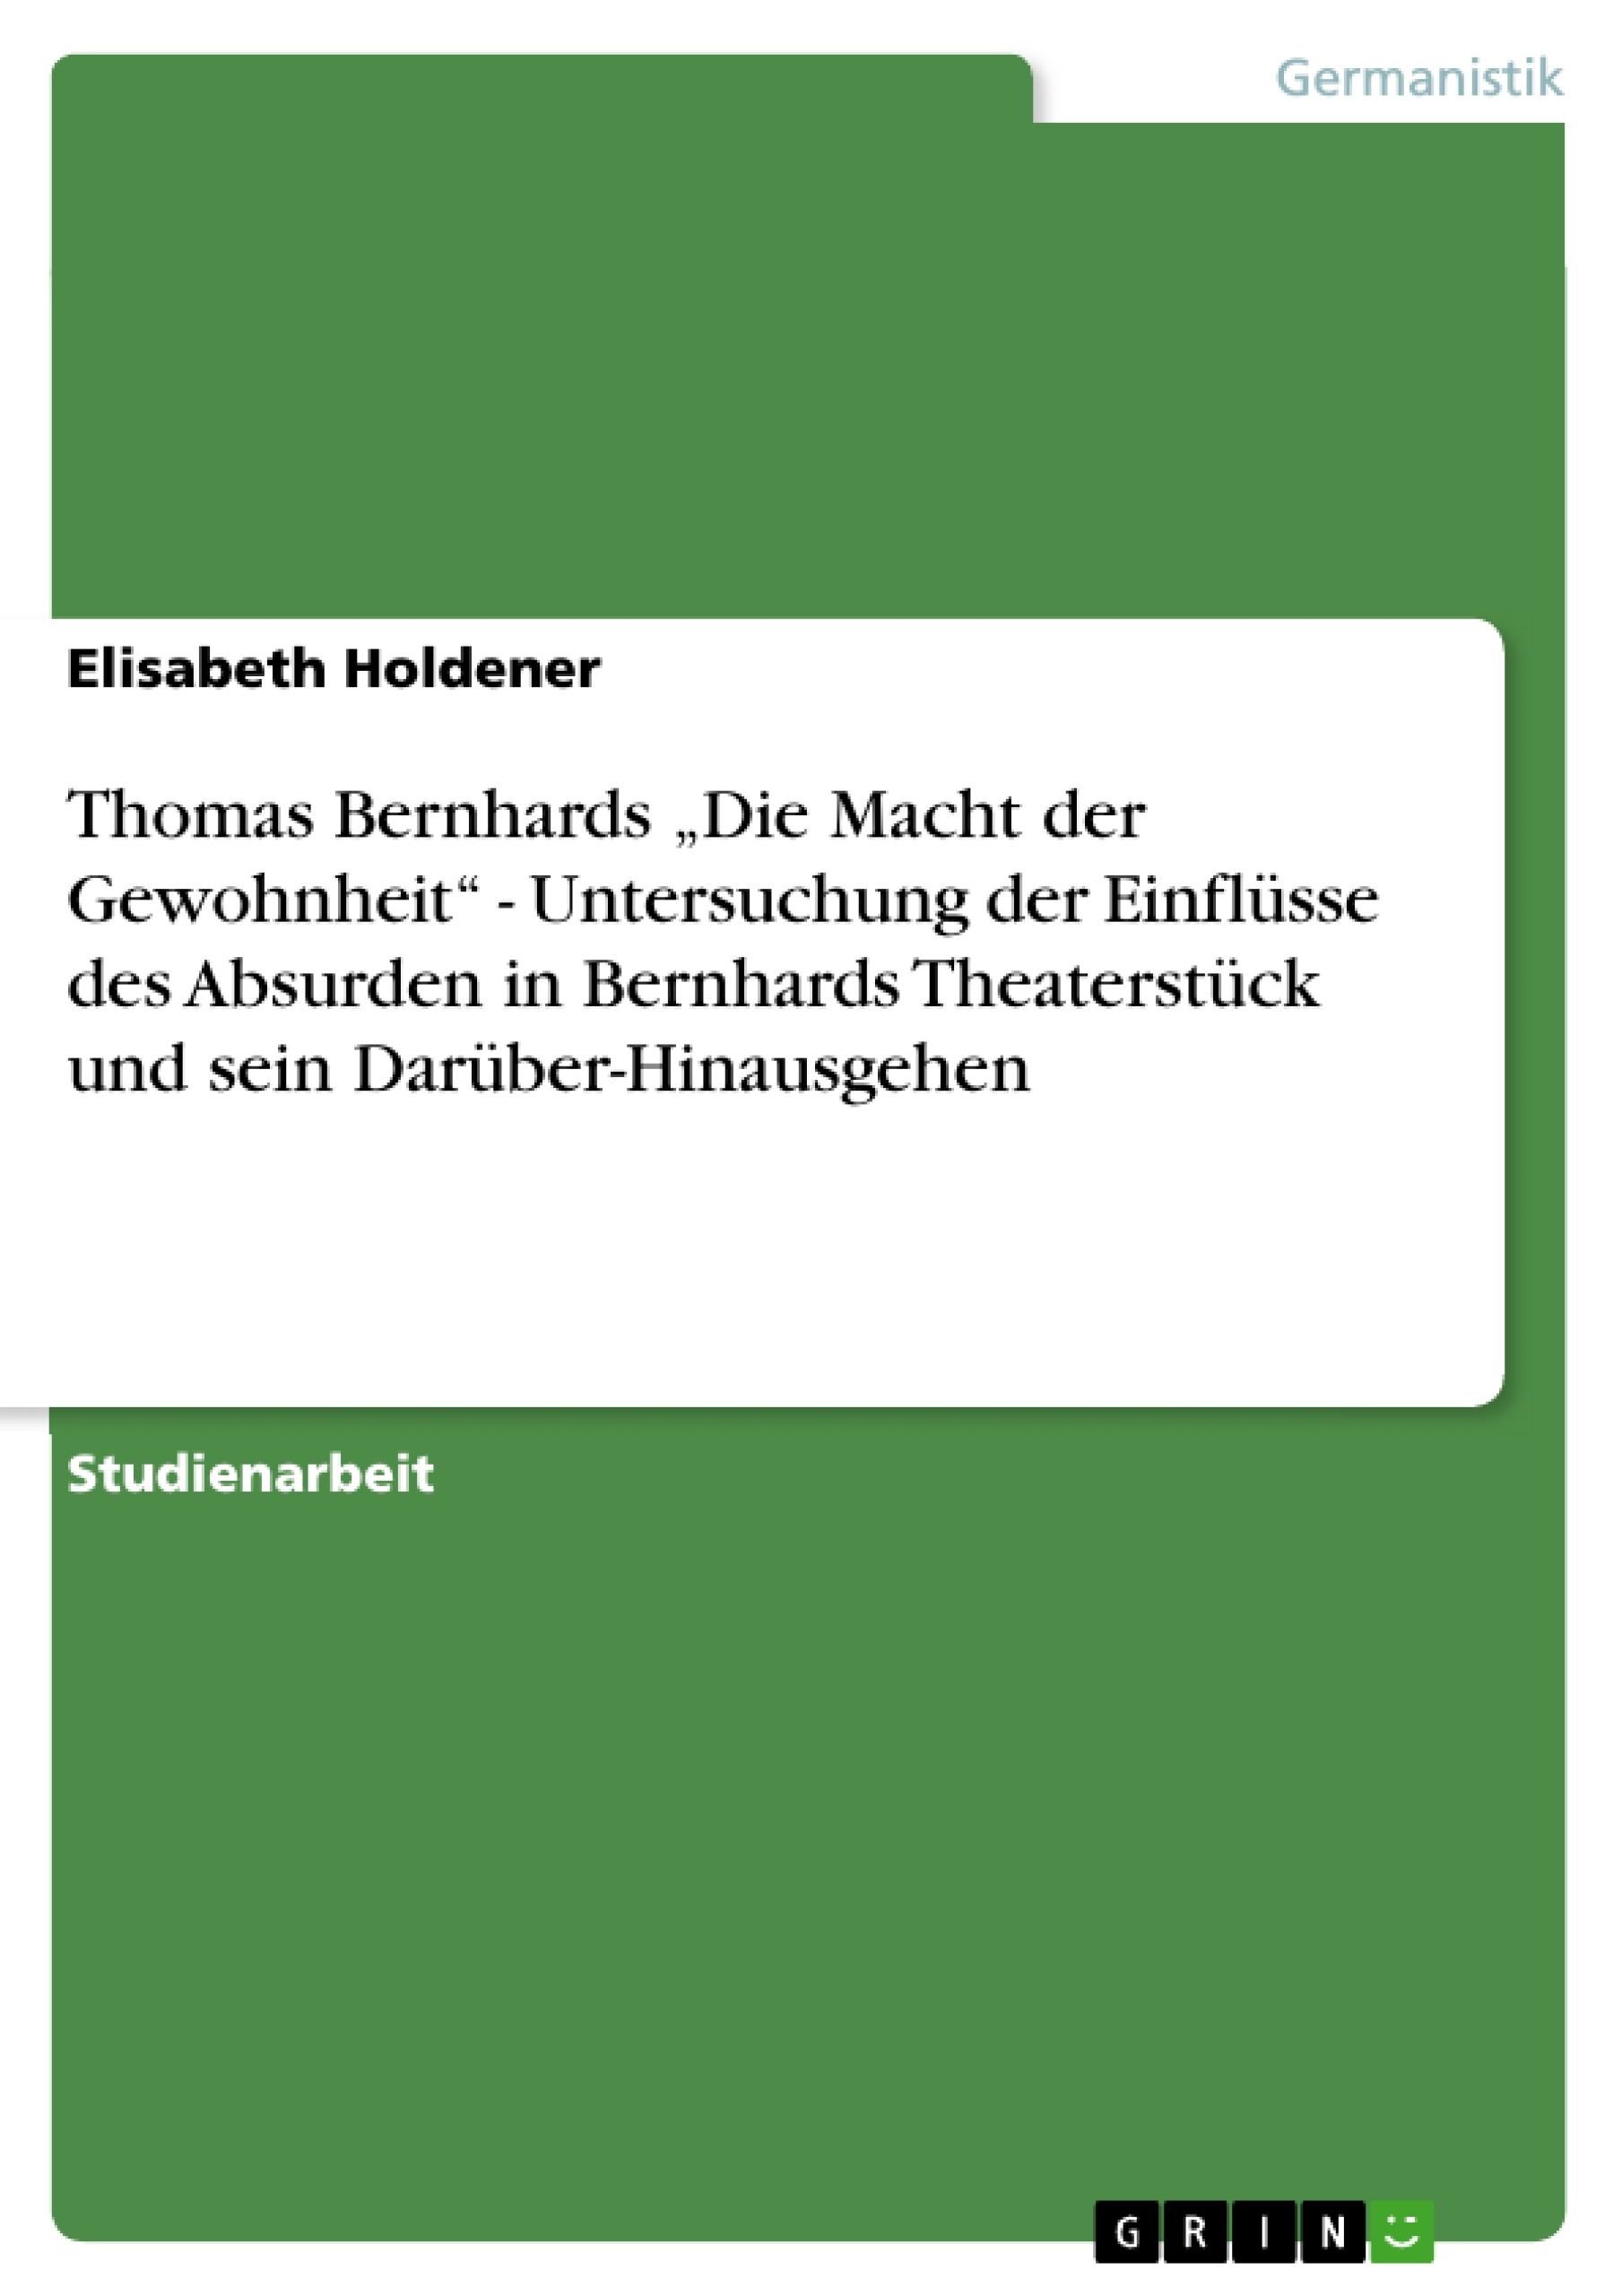 Título: Thomas Bernhards „Die Macht der Gewohnheit“ - Untersuchung der Einflüsse des Absurden in Bernhards Theaterstück und sein Darüber-Hinausgehen